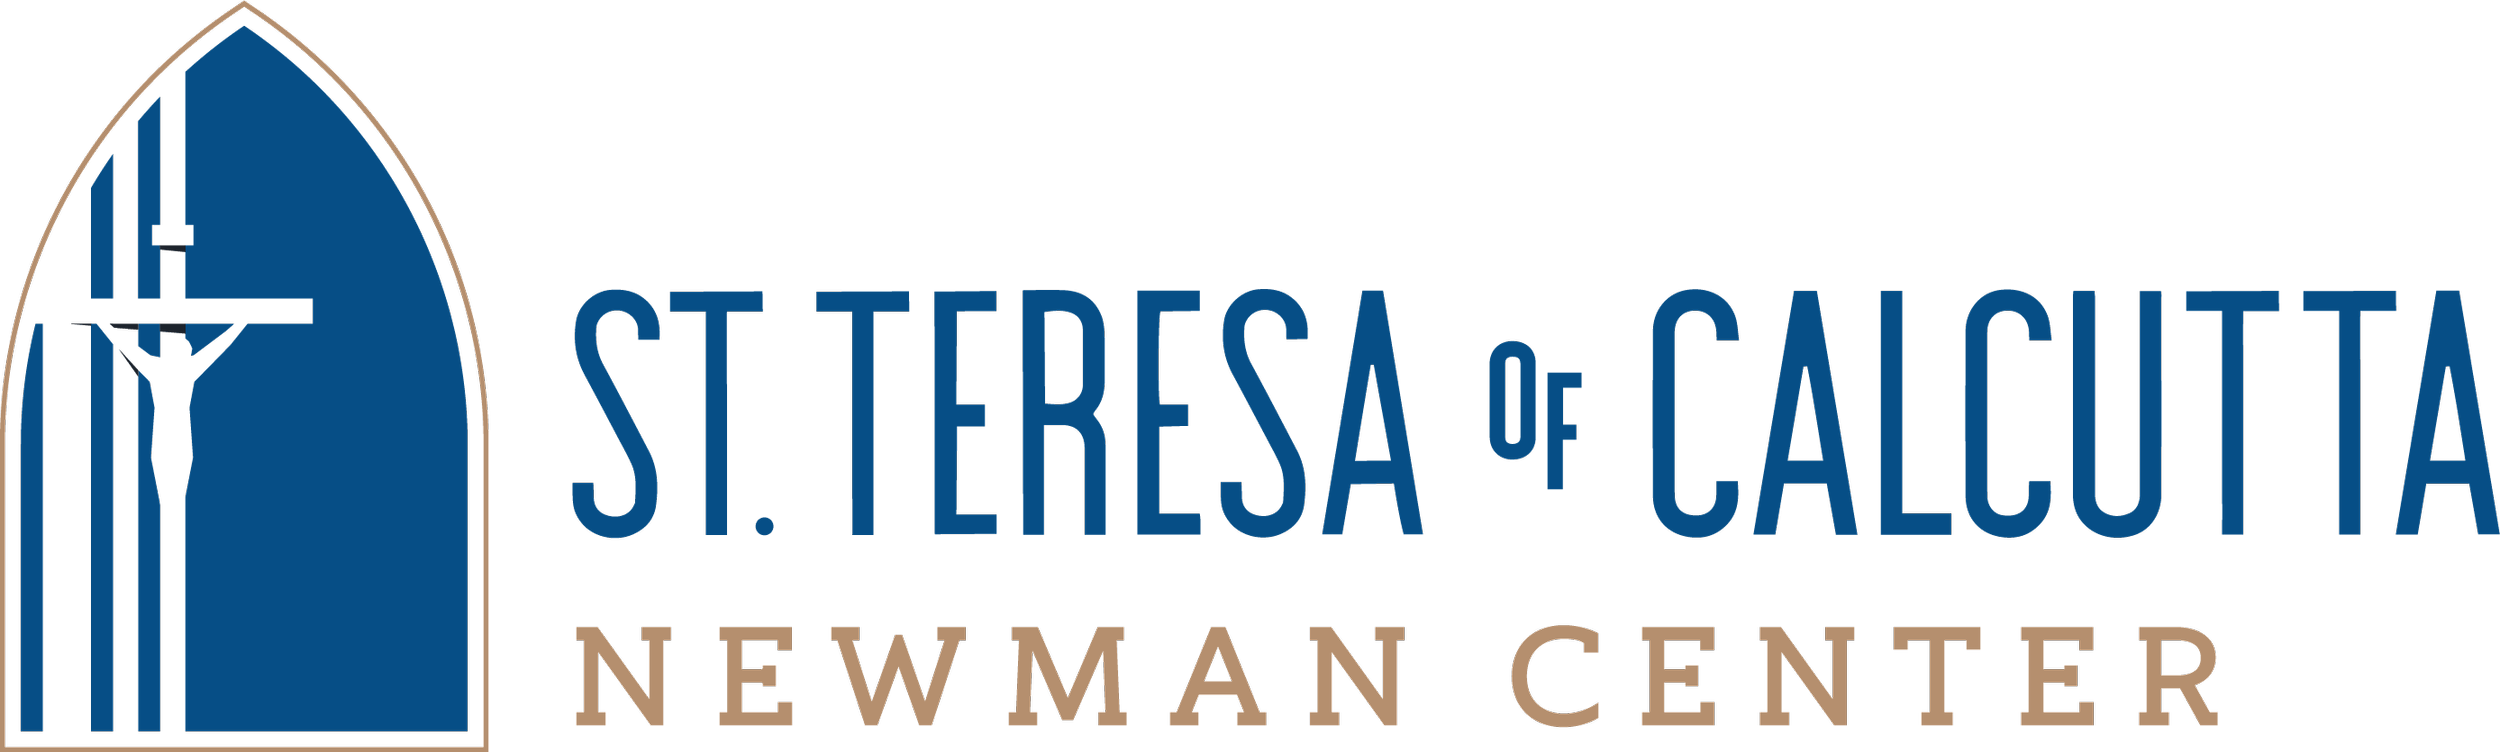 St. Teresa of Calcutta Newman Center